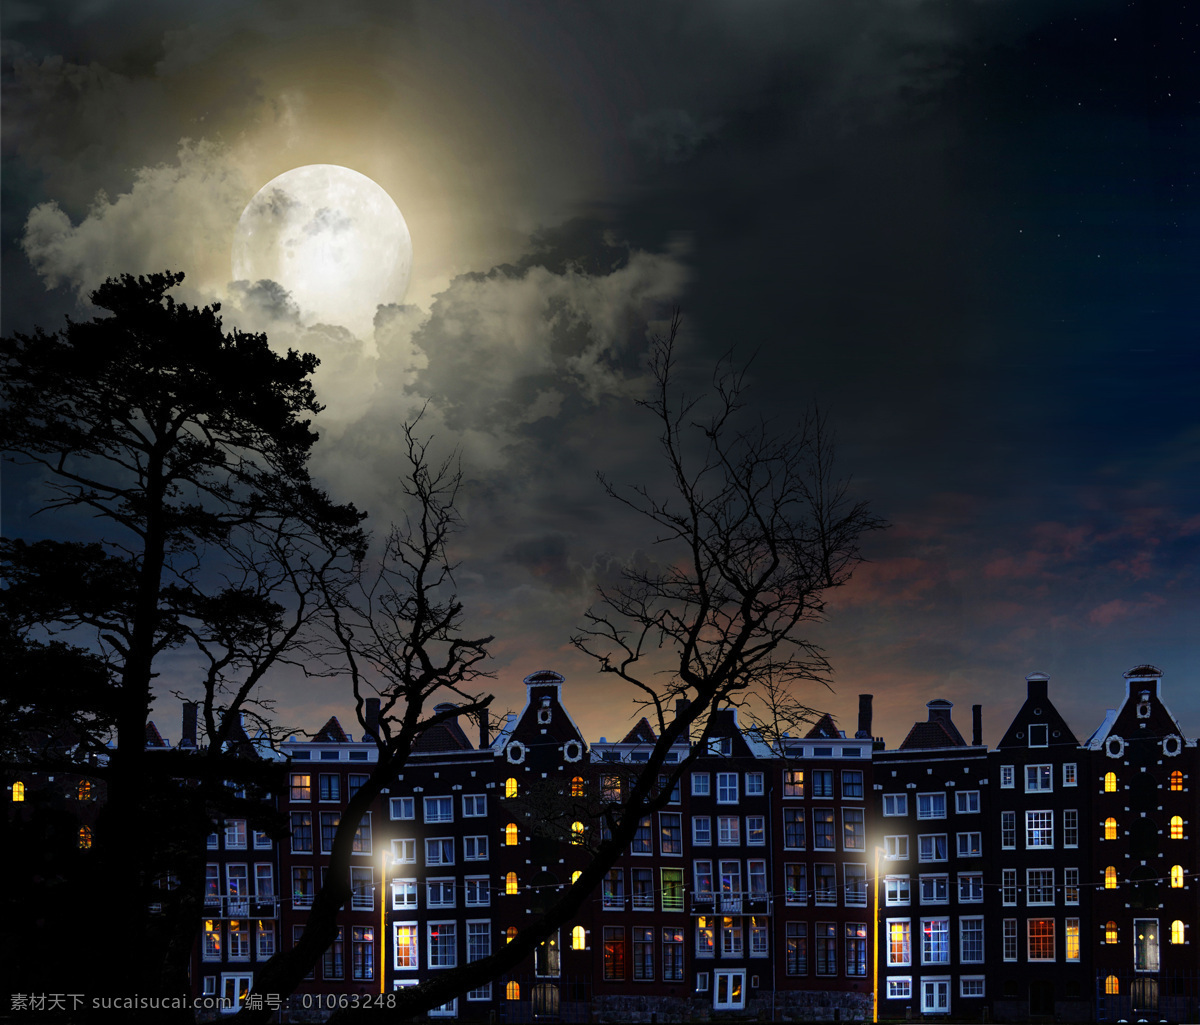 夜晚 下 城市 美景 月亮 树木 建筑 灯光 风景 山水风景 风景图片